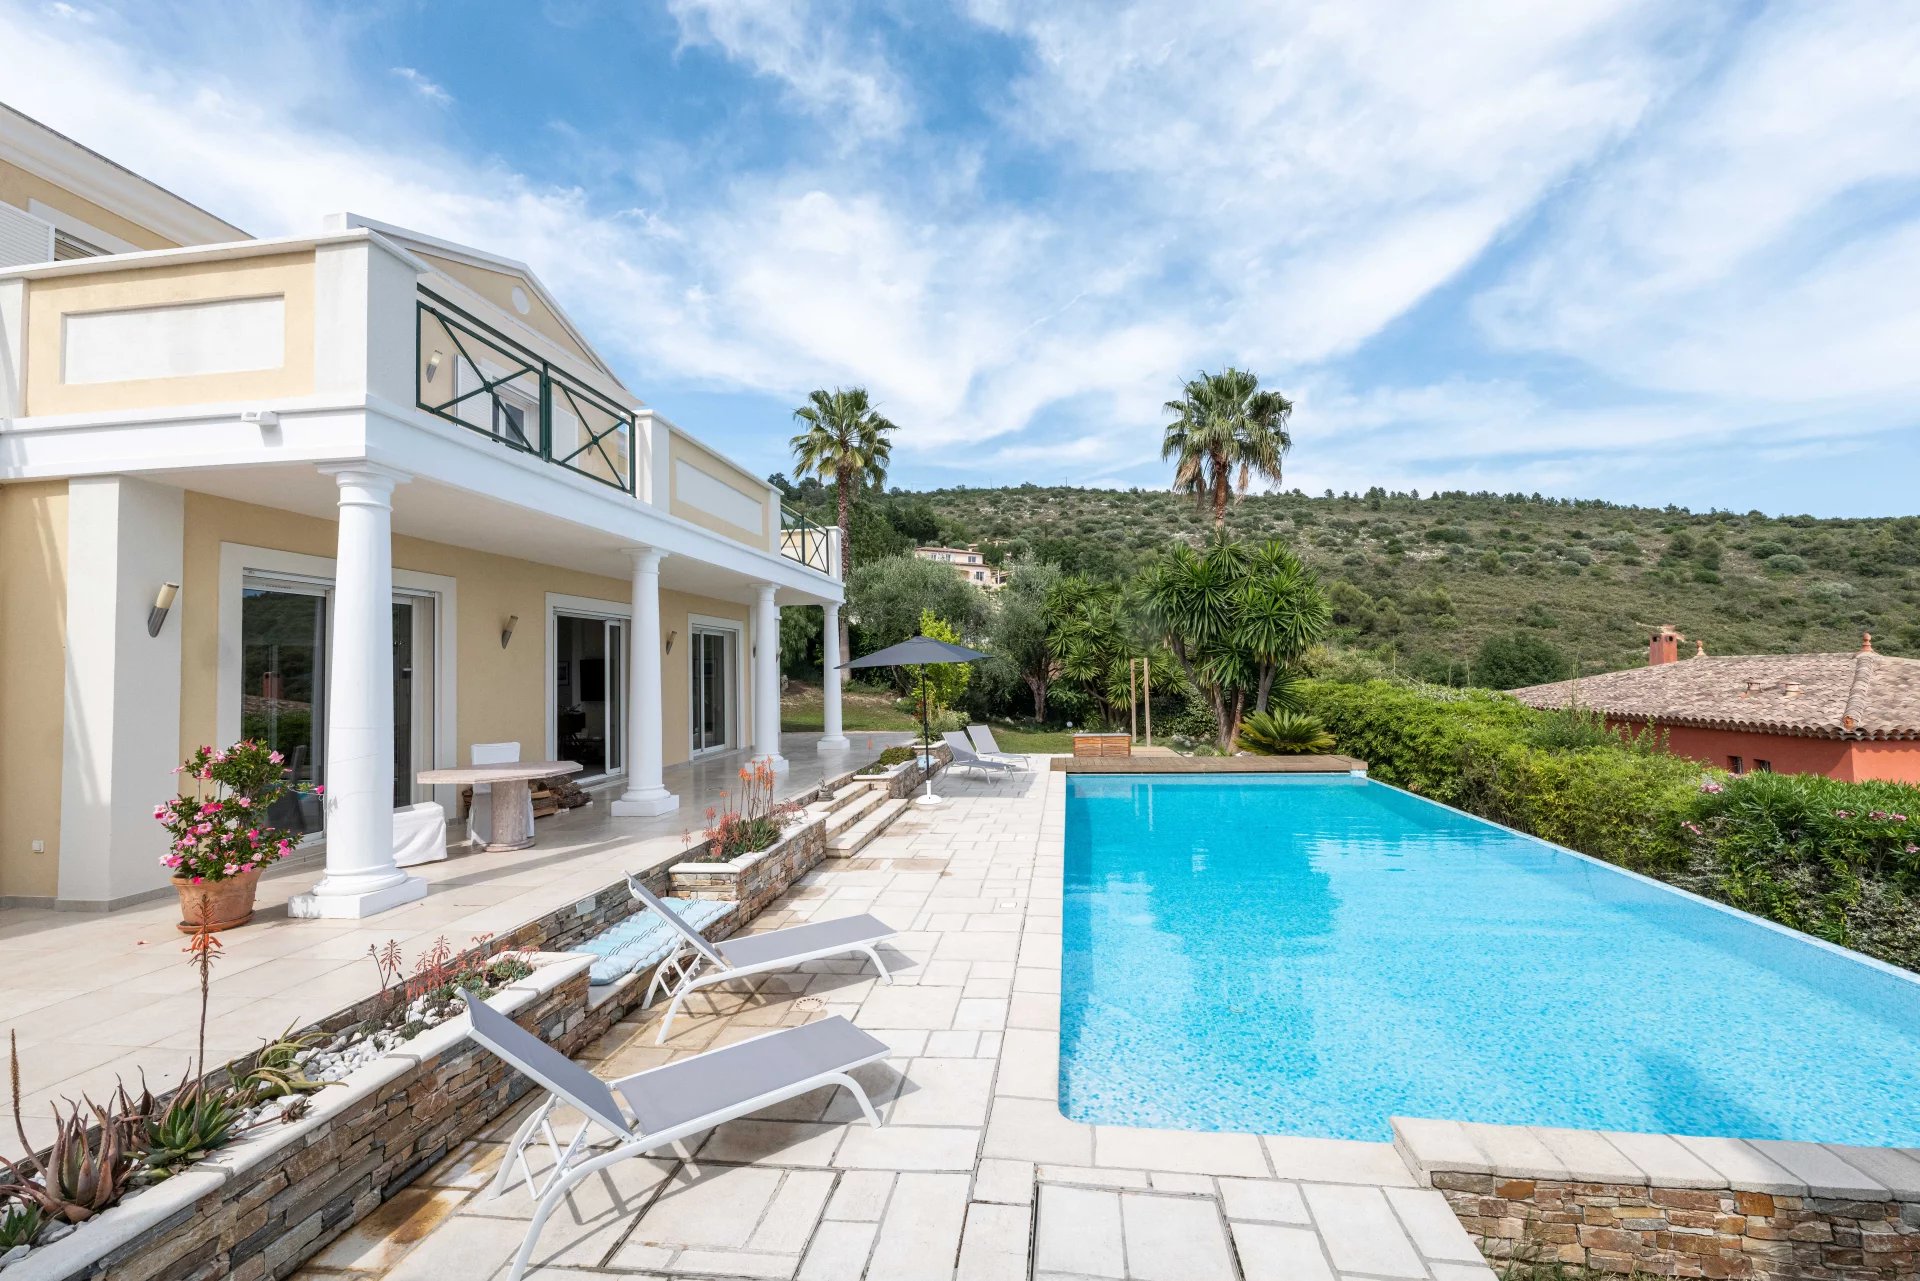 Location Falicon Villa meublée en Duplex 230m² avec piscine Domaine du Faliconnet